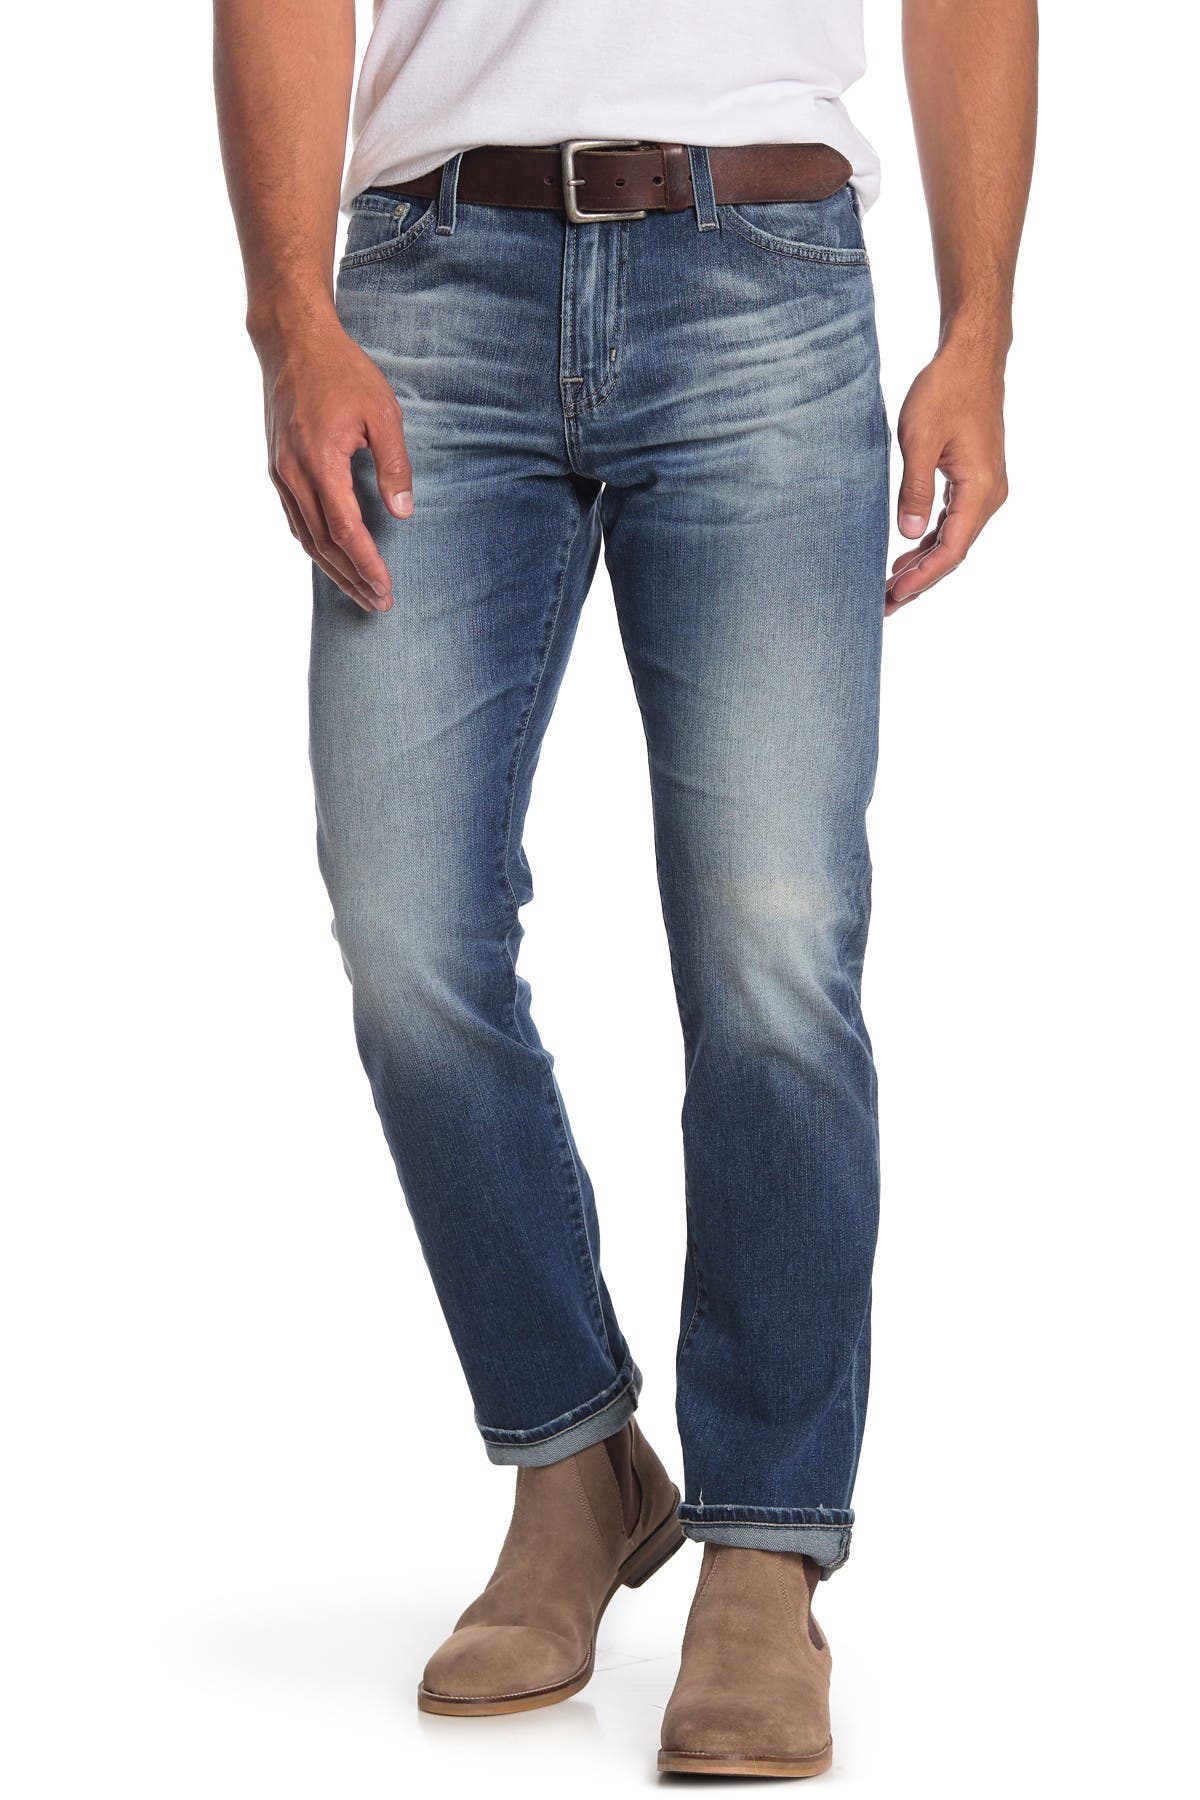 ag jeans the everett